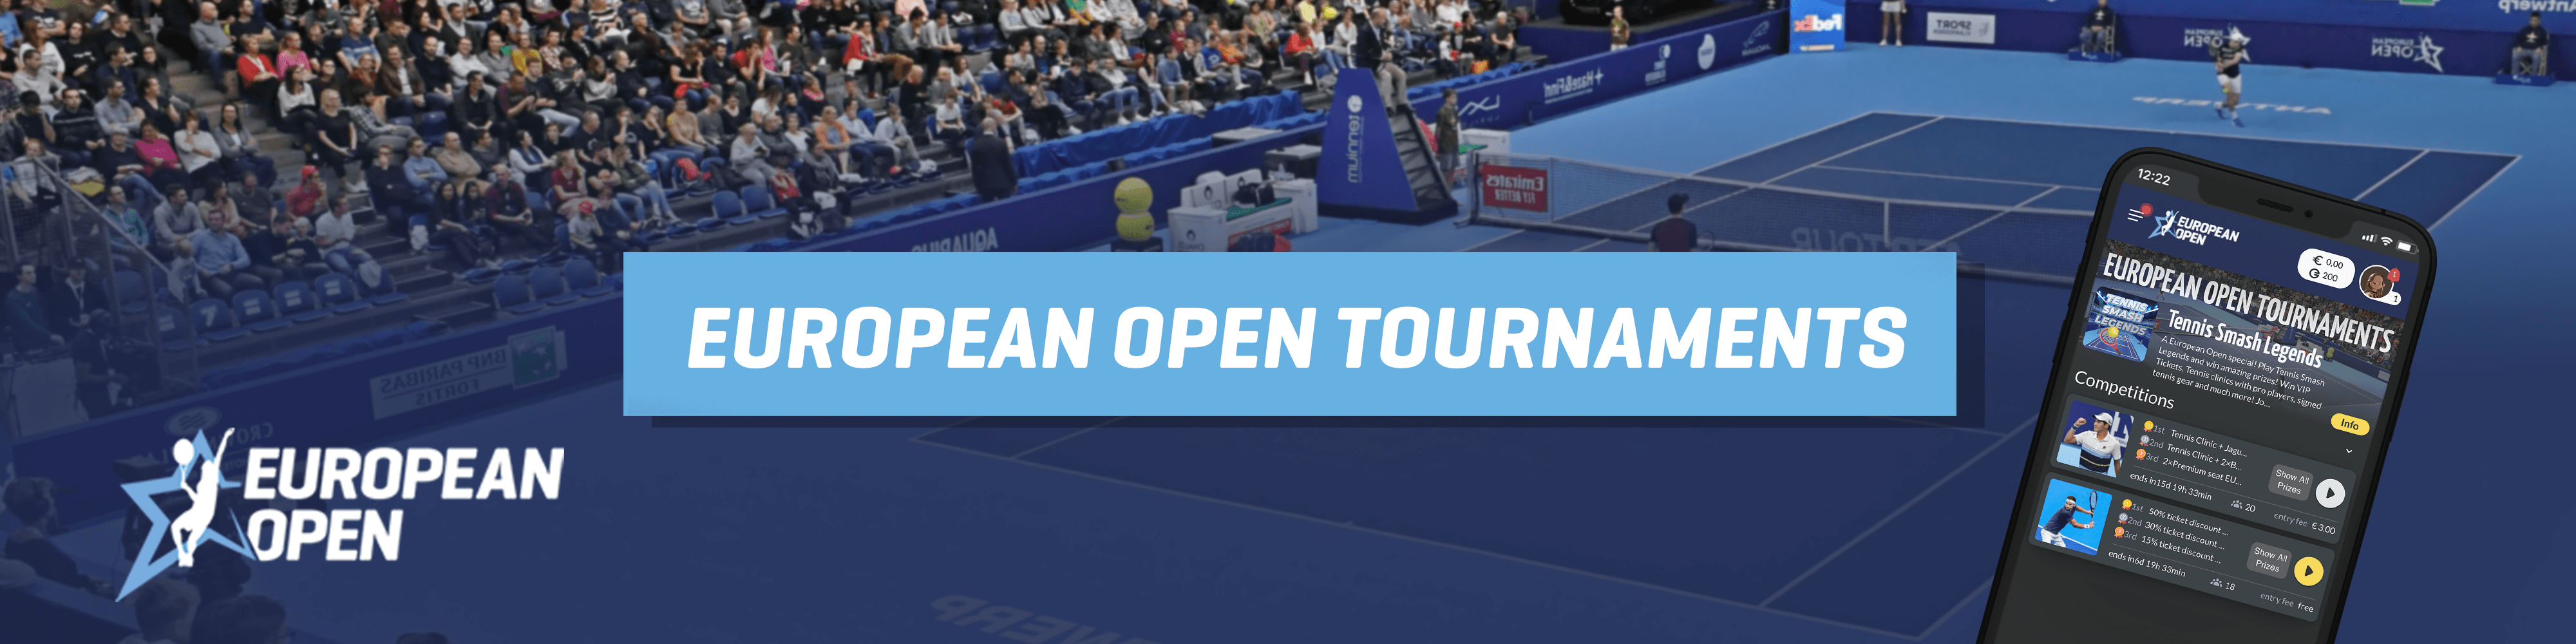 Win tennis prizes in the European Open Tournaments on EazeGames!